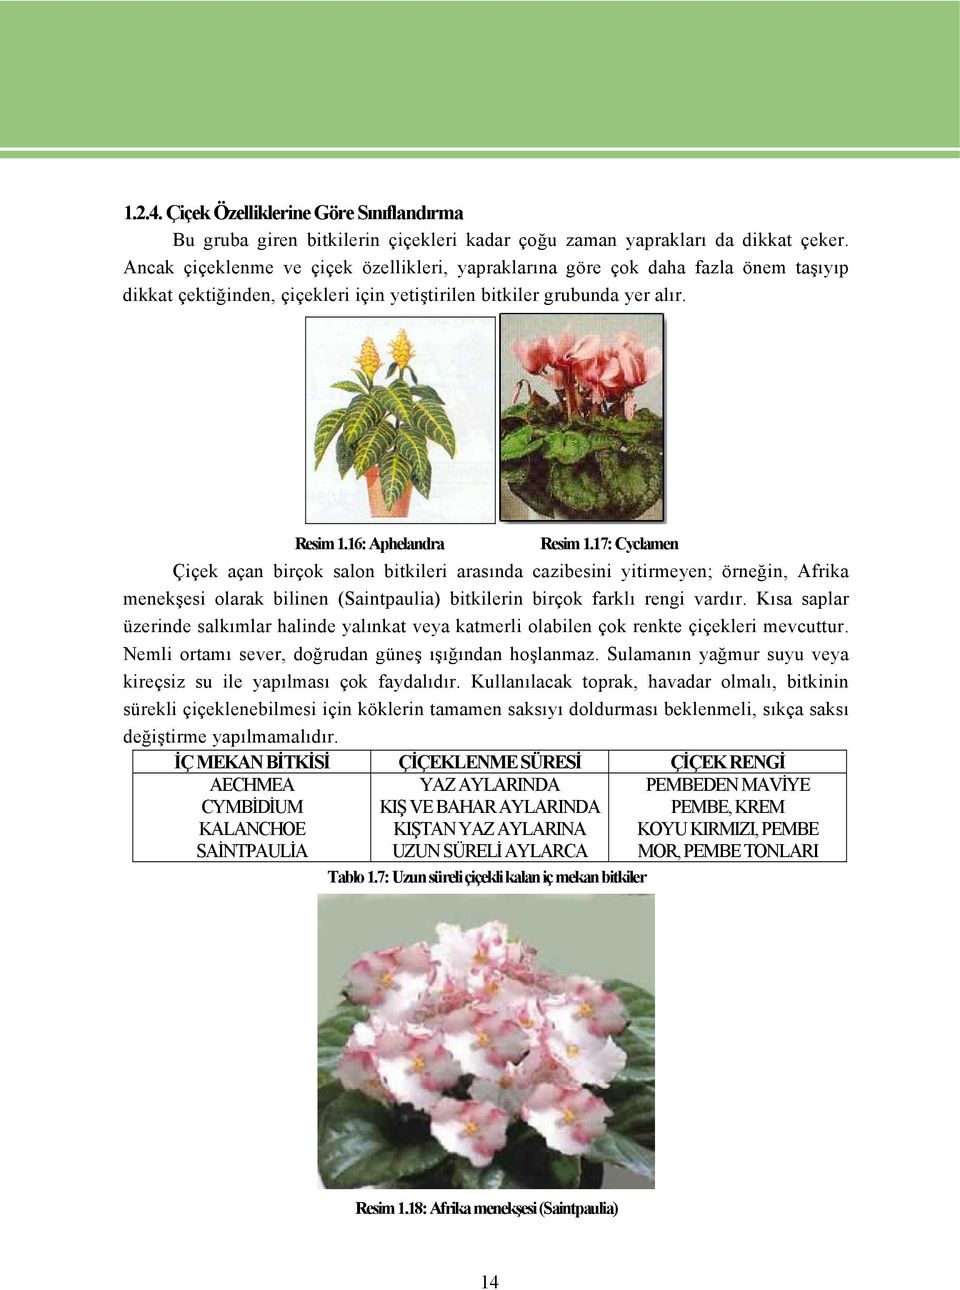 17: Cyclamen Çiçek açan birçok salon bitkileri arasında cazibesini yitirmeyen; örneğin, Afrika menekşesi olarak bilinen (Saintpaulia) bitkilerin birçok farklı rengi vardır.